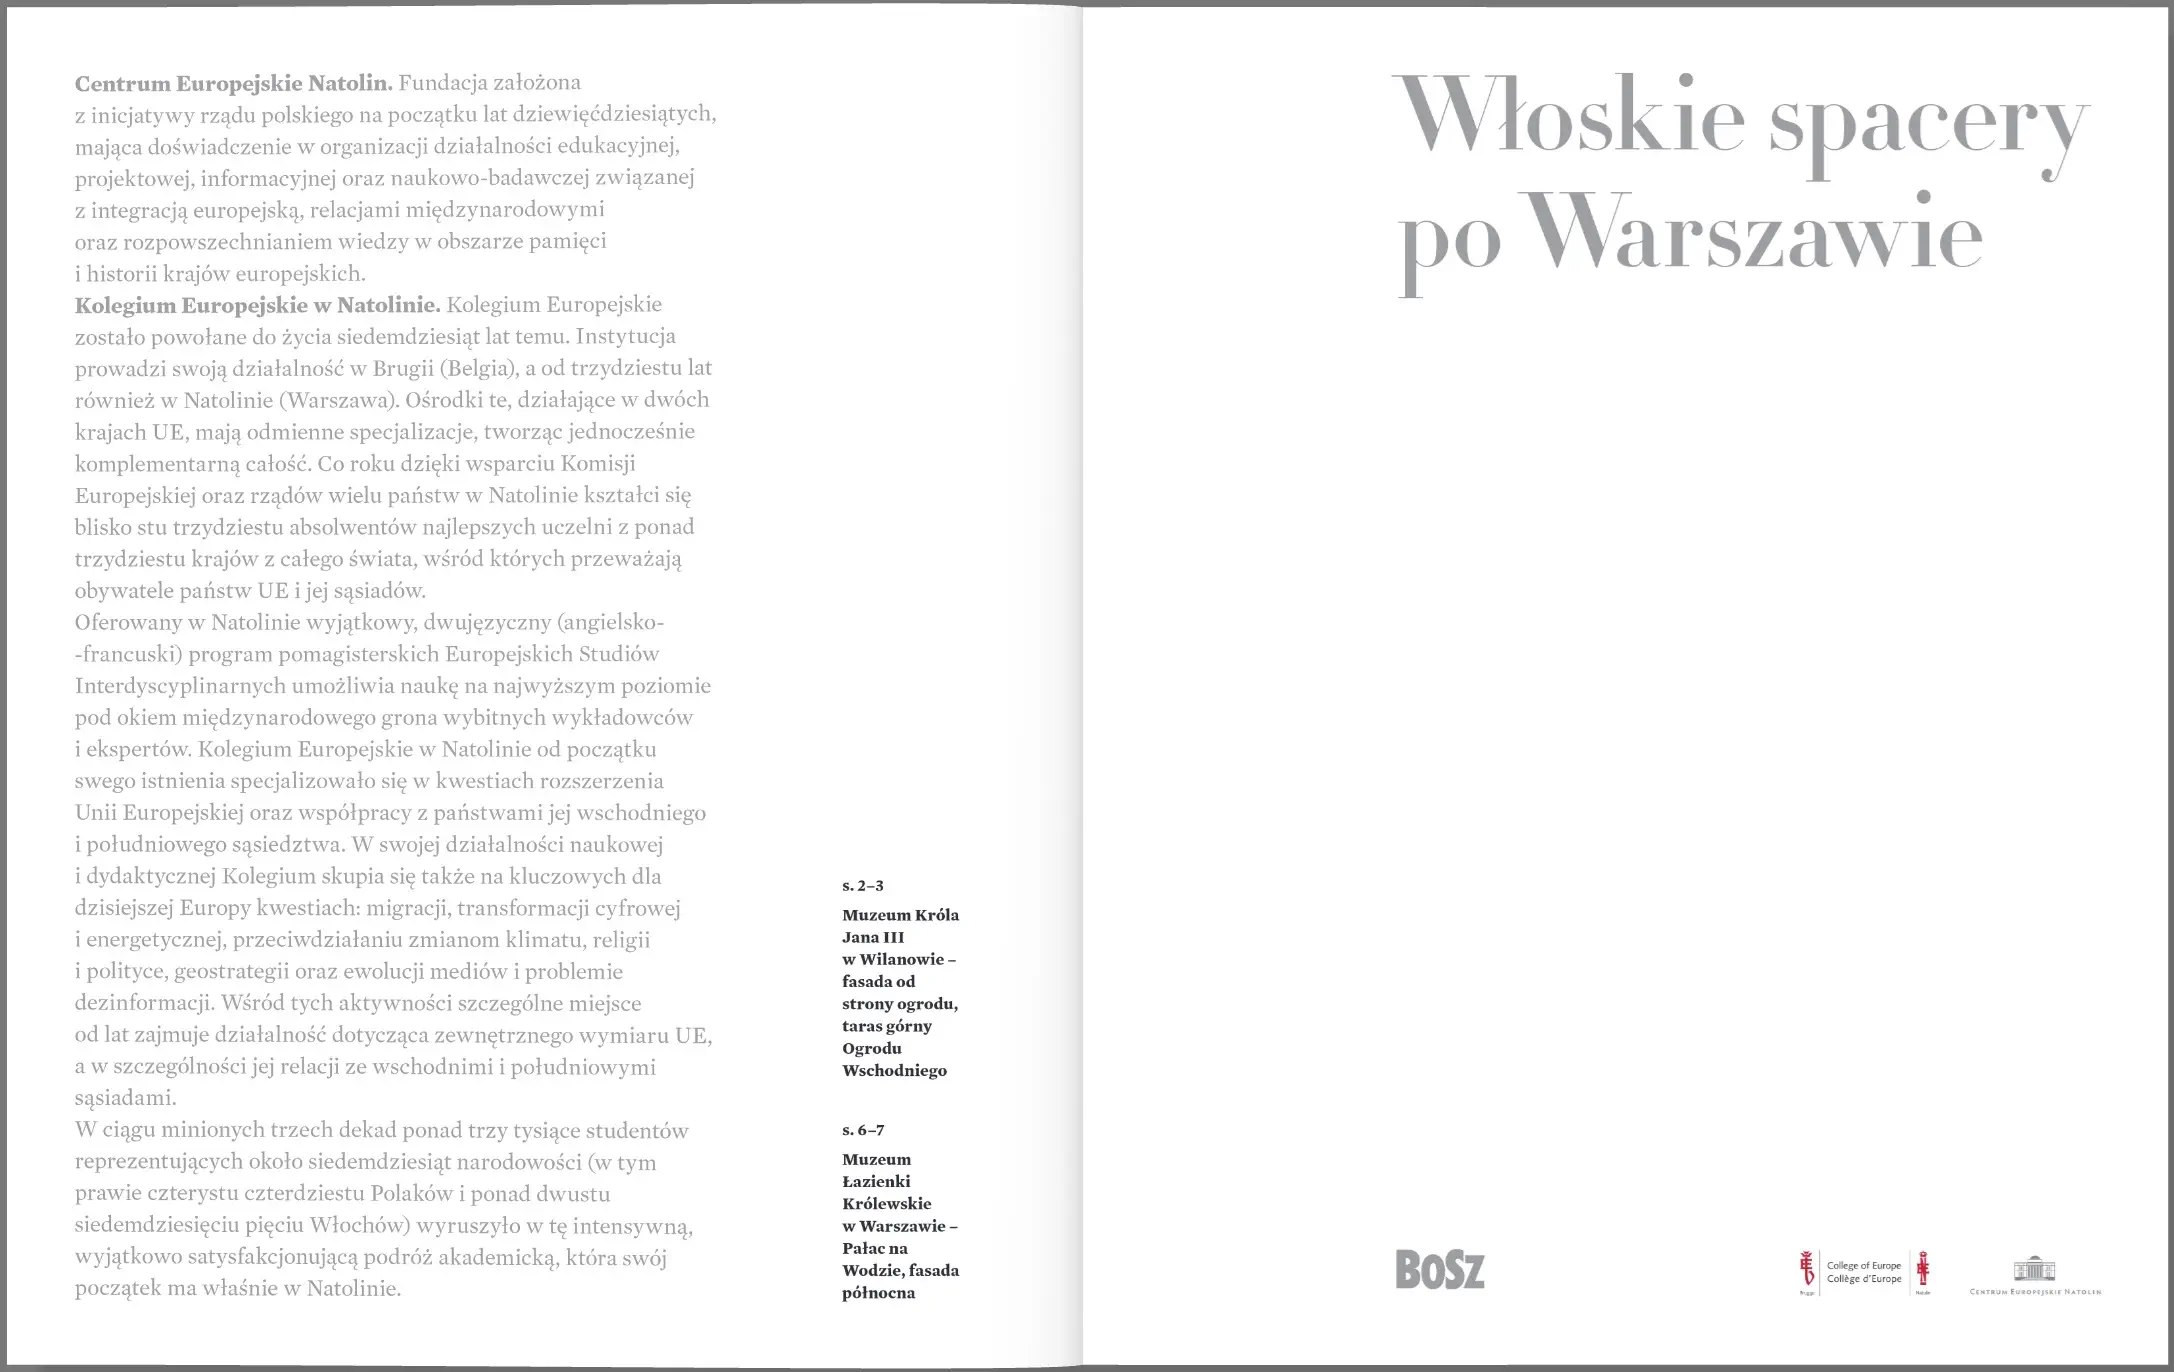 Włoskie spacery po Warszawie – strony 1